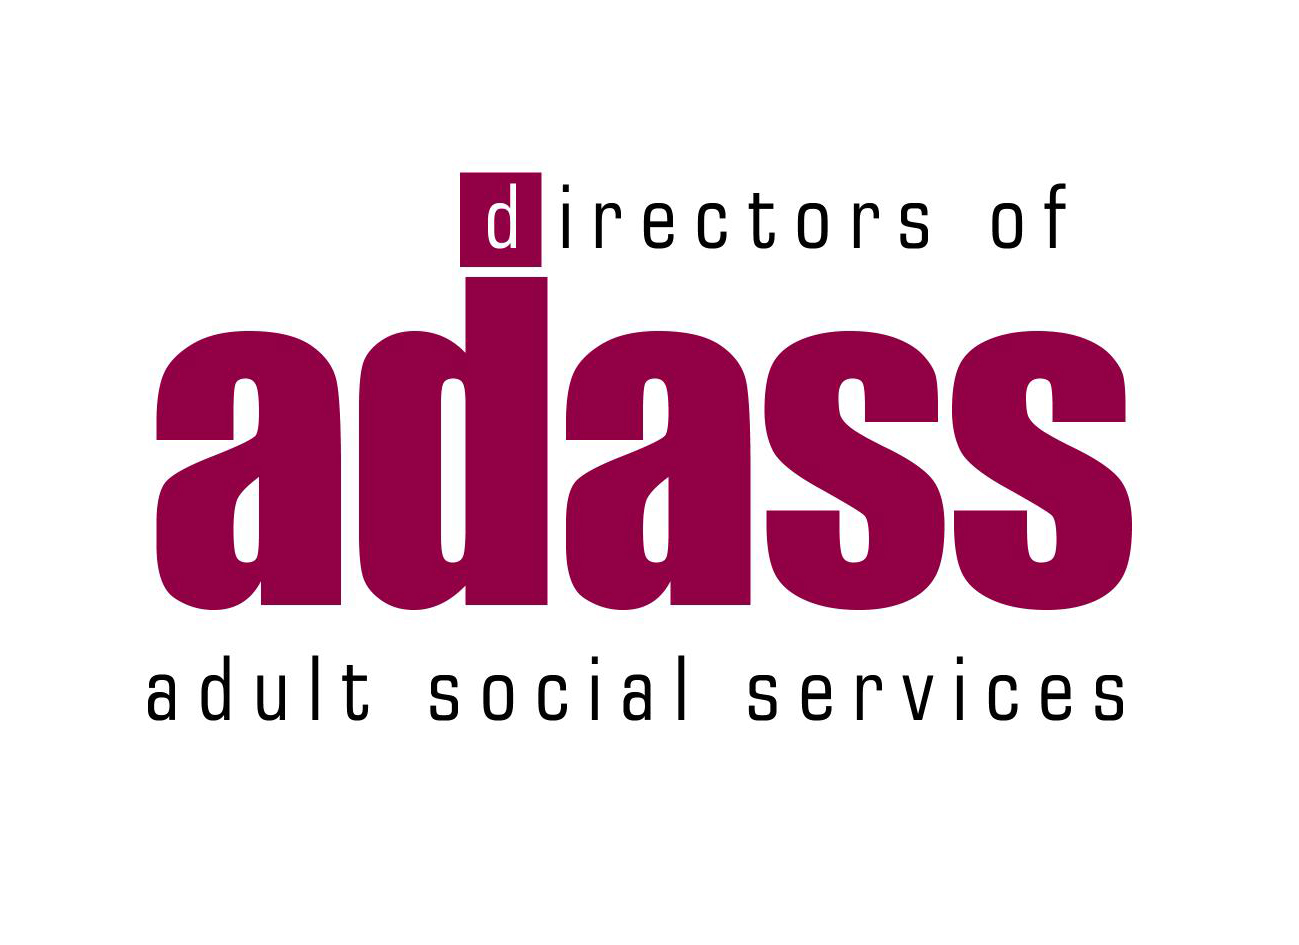 ADASS logo